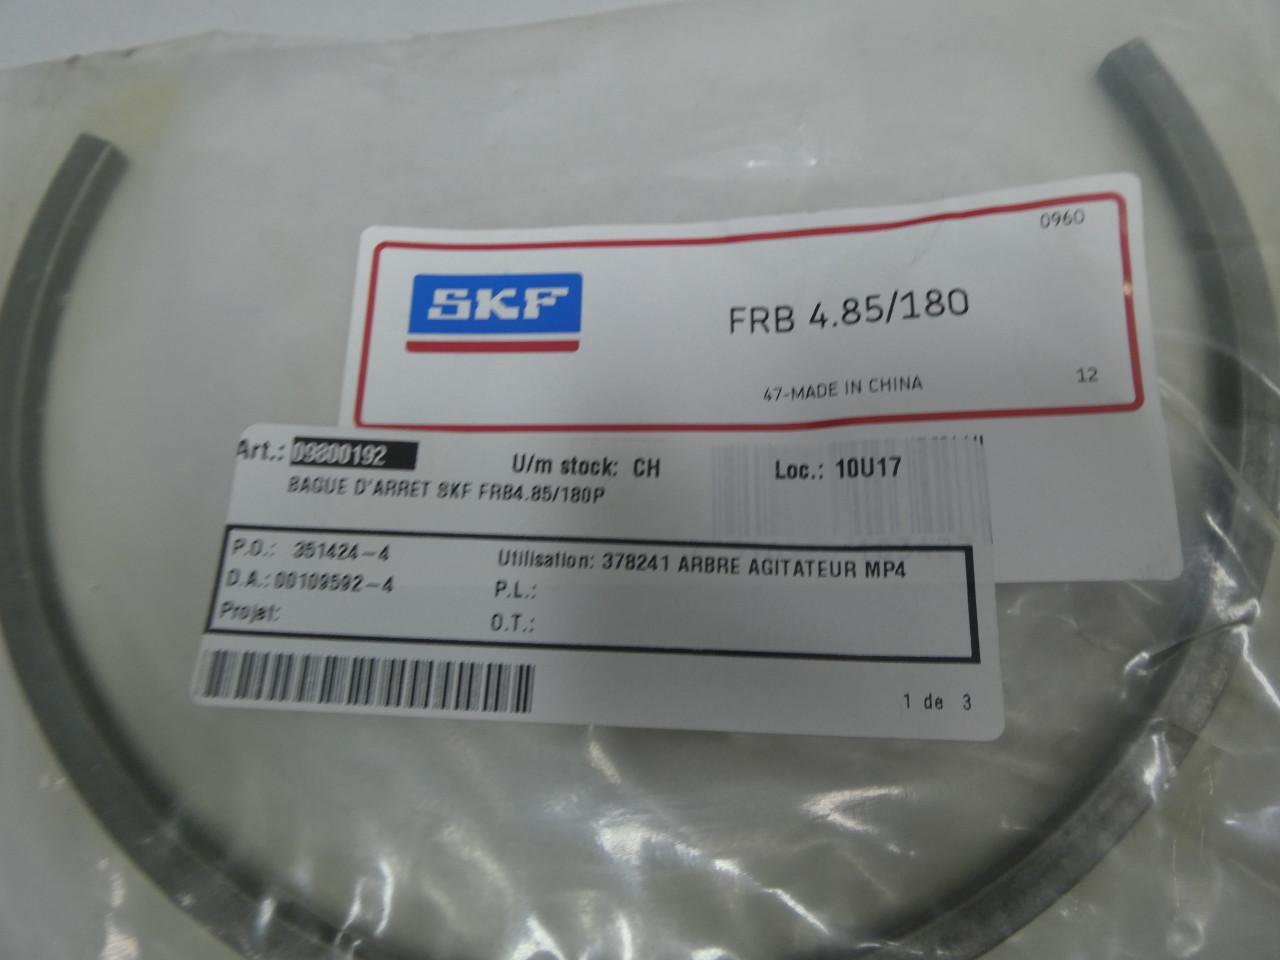 SKF KM 1 Standard Locknut, Right Hand, Not Self-Locking, Steel, Metric, M12  x 1mm Thread: Linear Ball Bearings: Amazon.com: Industrial & Scientific